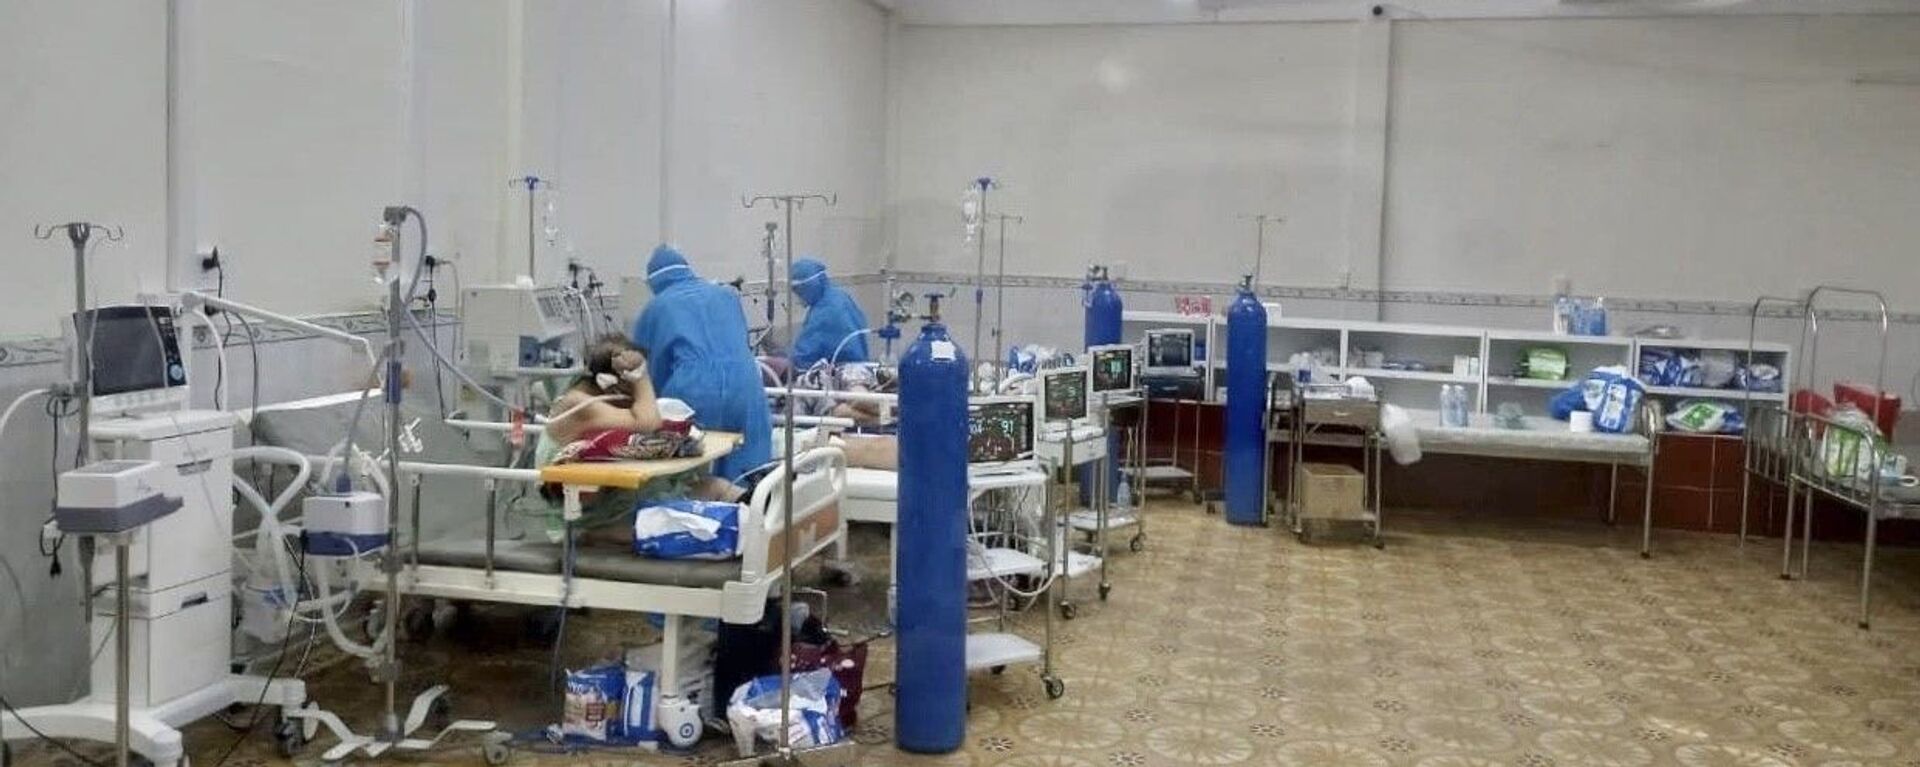 Tại bệnh viện Tân Phú, số lượng bệnh nhân đang điều trị là 220 người. Trong số đó có 151 bệnh nhân nặng cần thở oxy, số còn lại là người có triệu chứng, nhiều bệnh nền cần phải điều trị - Sputnik Việt Nam, 1920, 07.12.2021